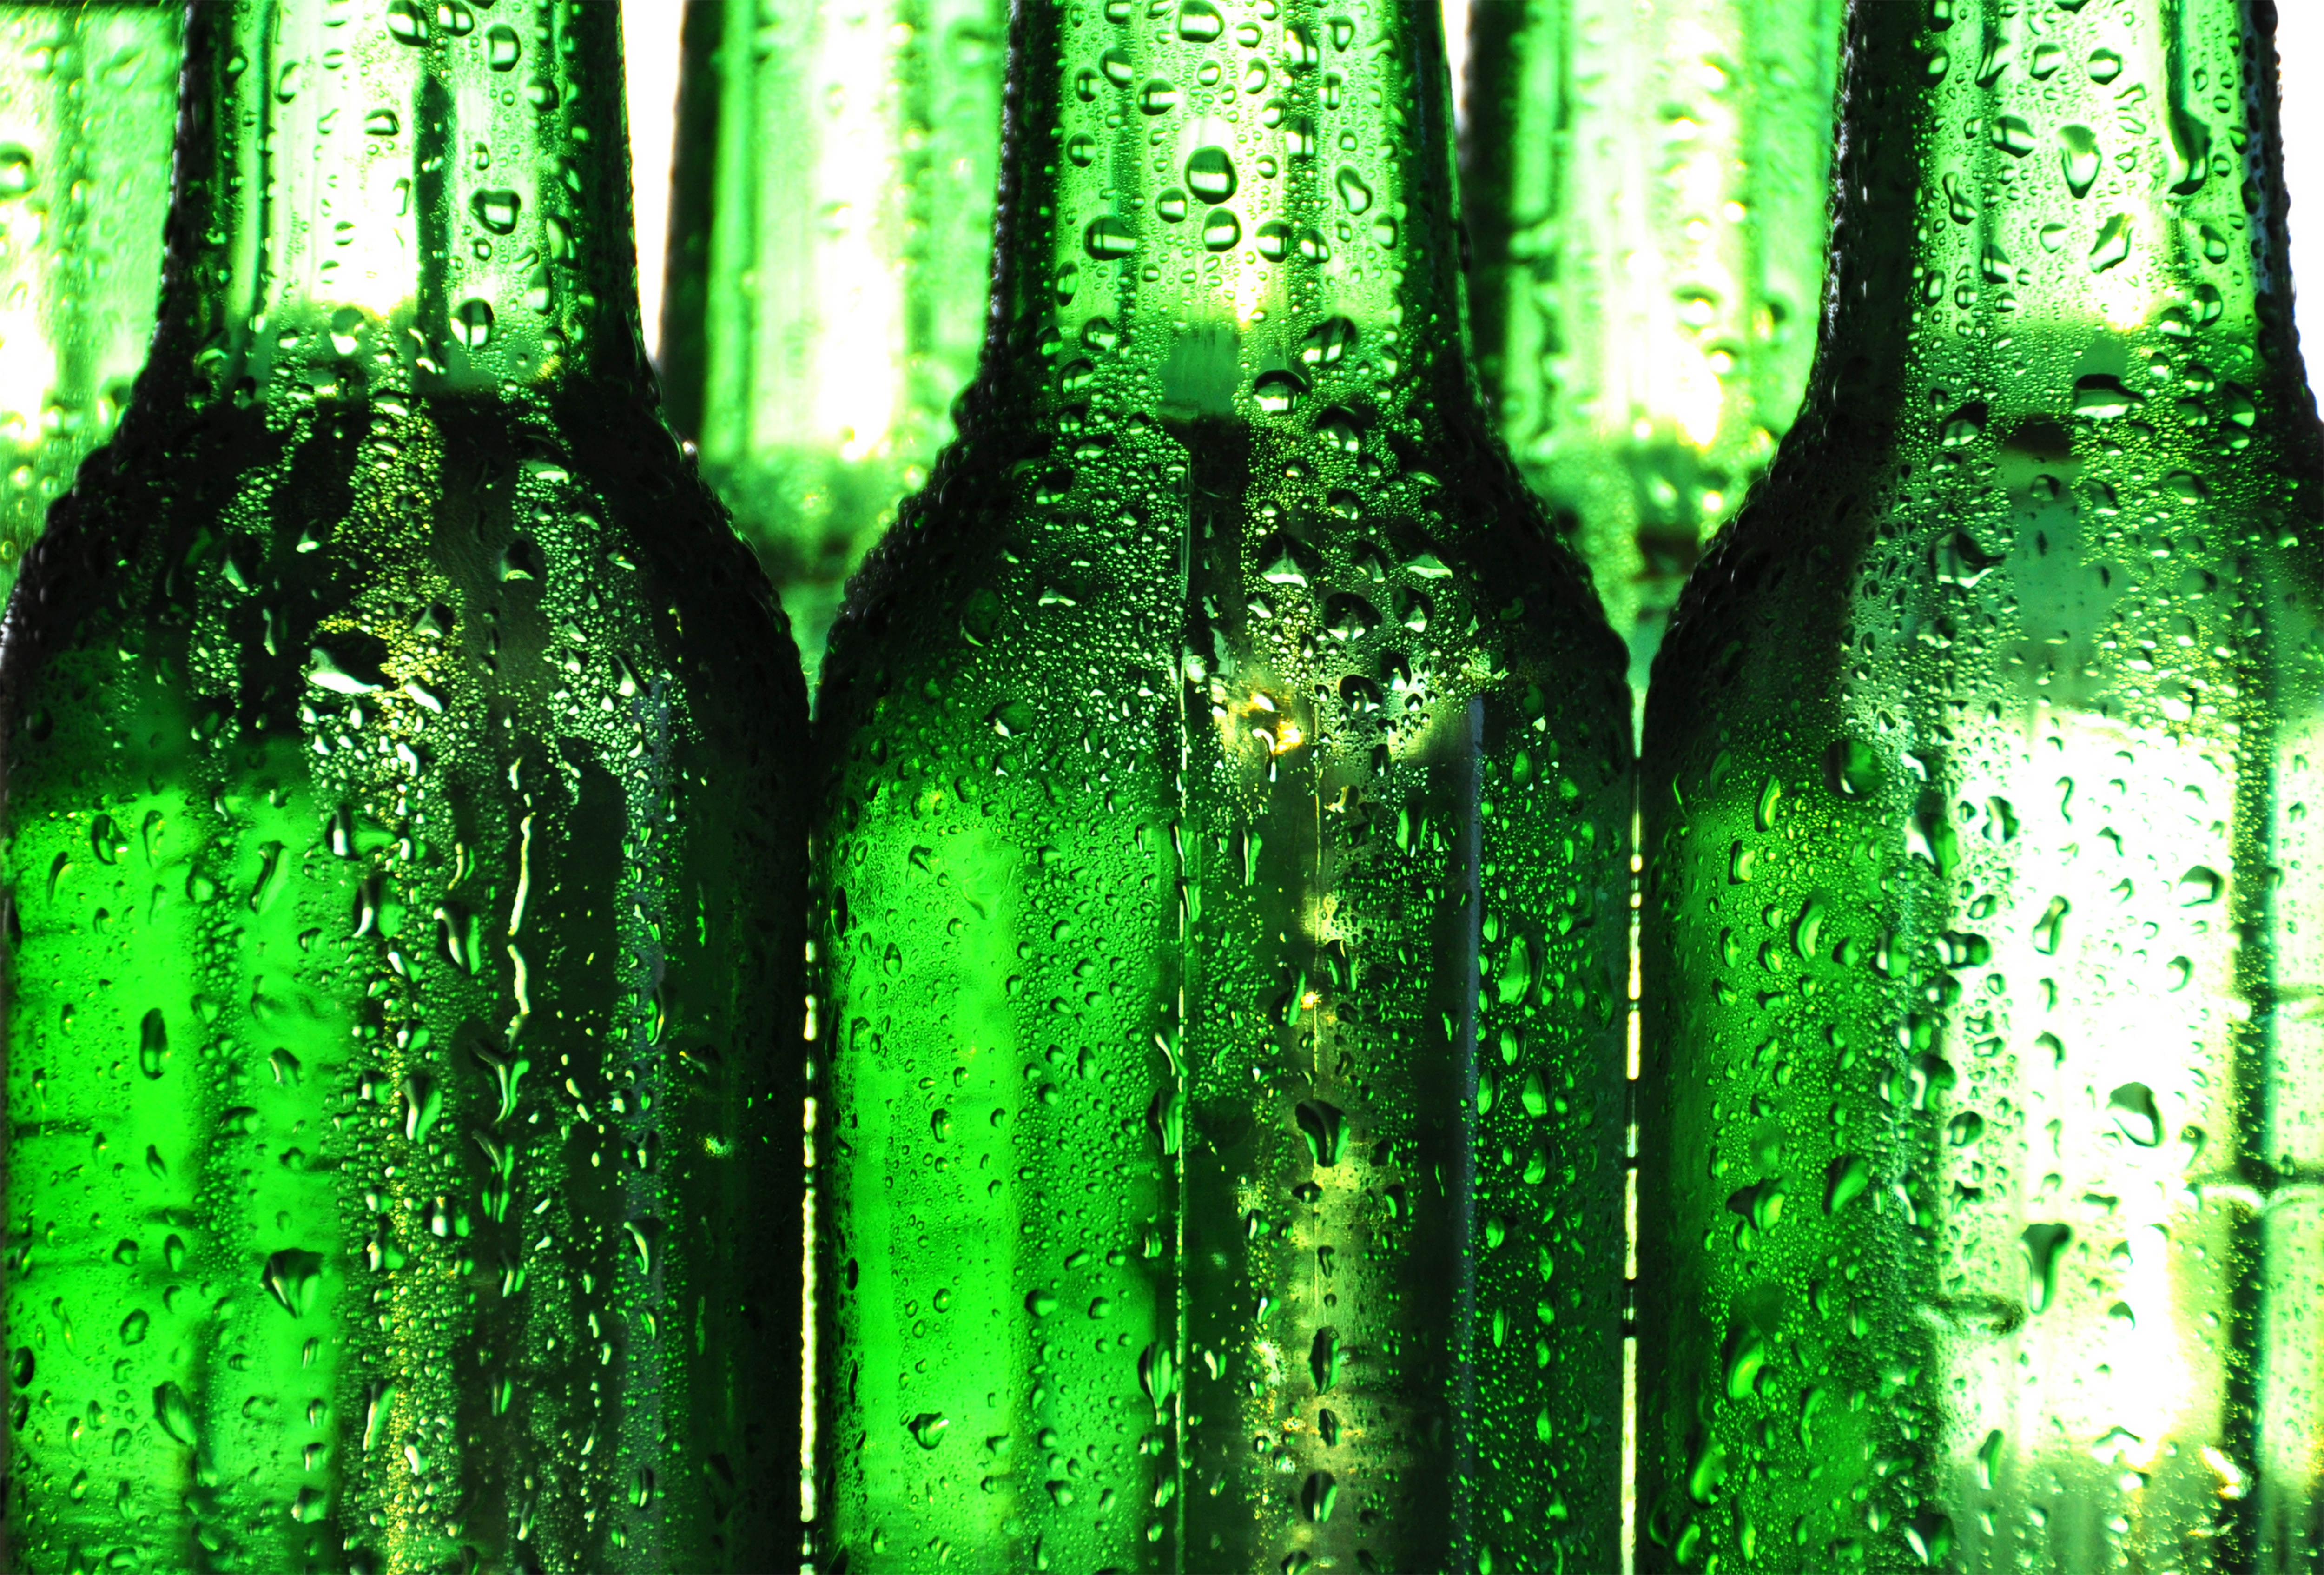 flaschentapete,flasche,glasflasche,grün,bierflasche,getränk